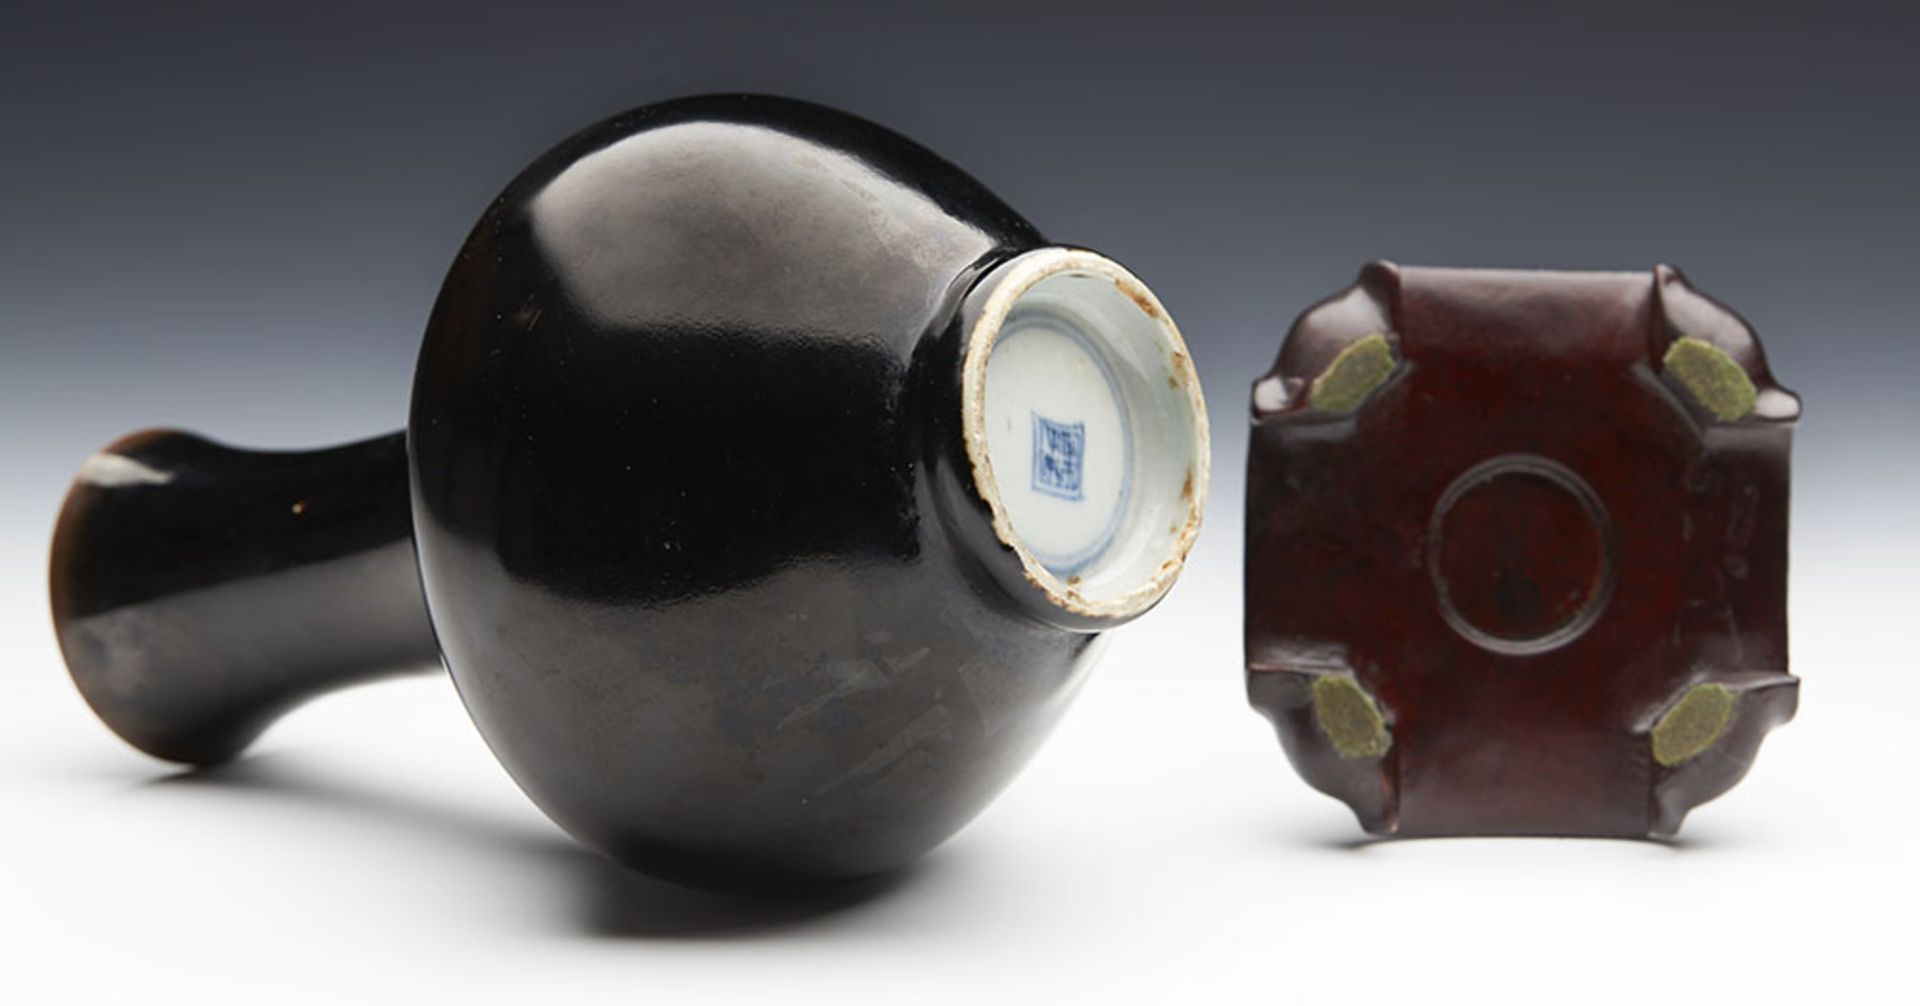 Antique Chinese Kangxi Brown/Black Glazed Bottle Vase 1662-1722 - Image 7 of 8